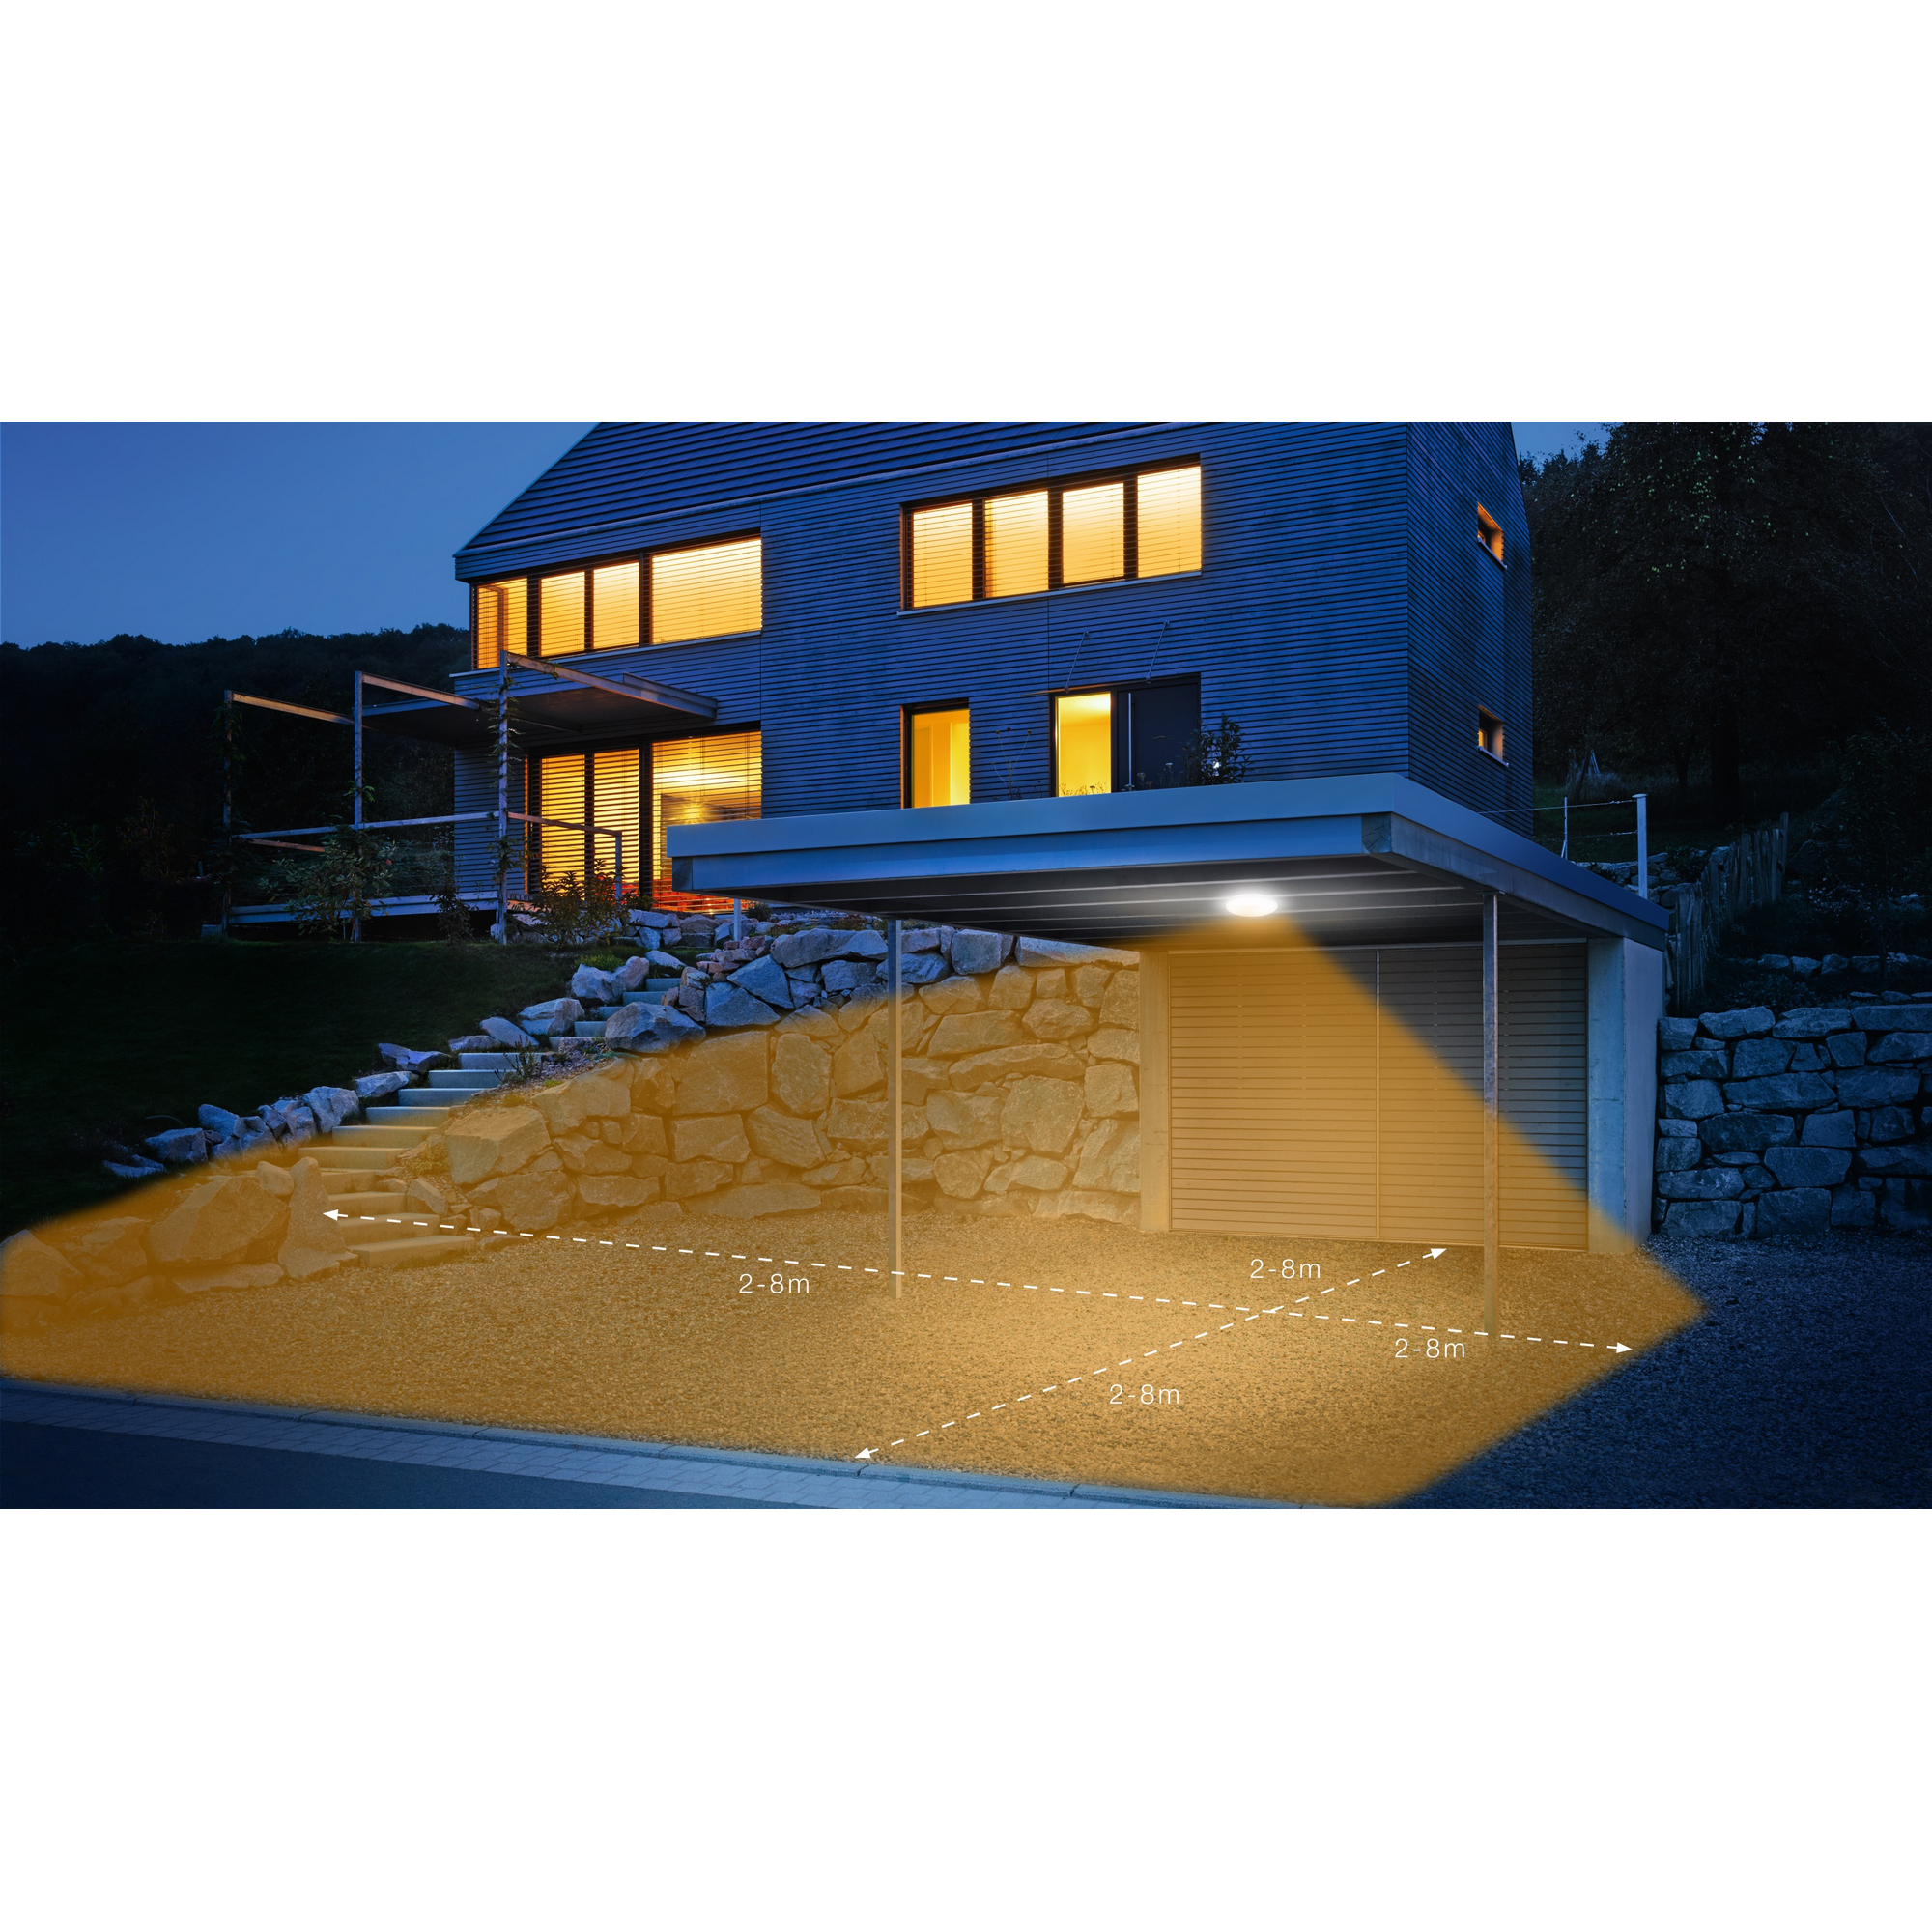 LED-Deckenleuchte 'DL Vario Quattro S' mit Bewegungsmelder weiß Ø 31 cm + product picture